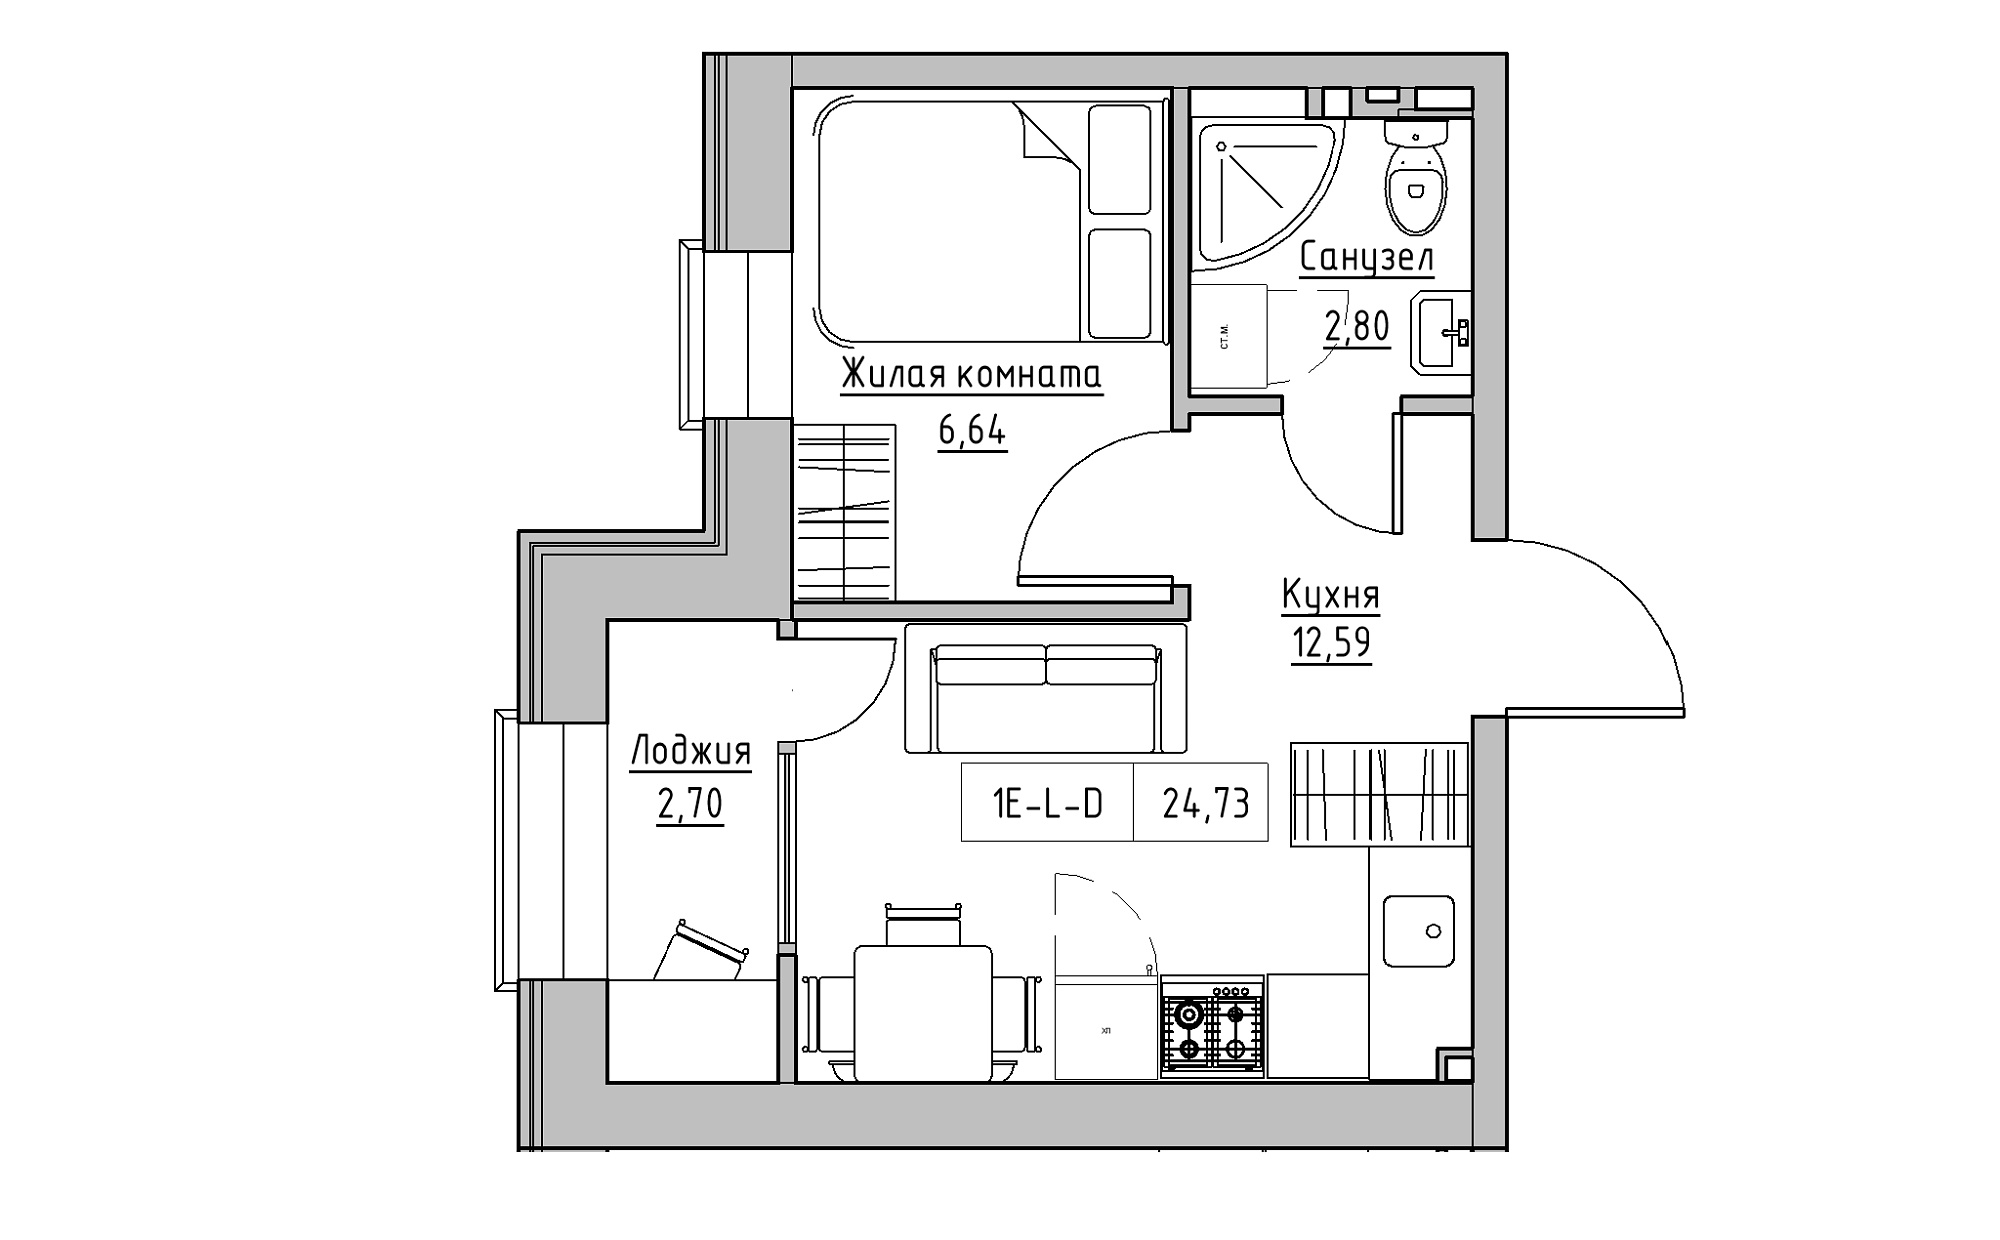 Планування 1-к квартира площею 24.73м2, KS-022-02/0013.